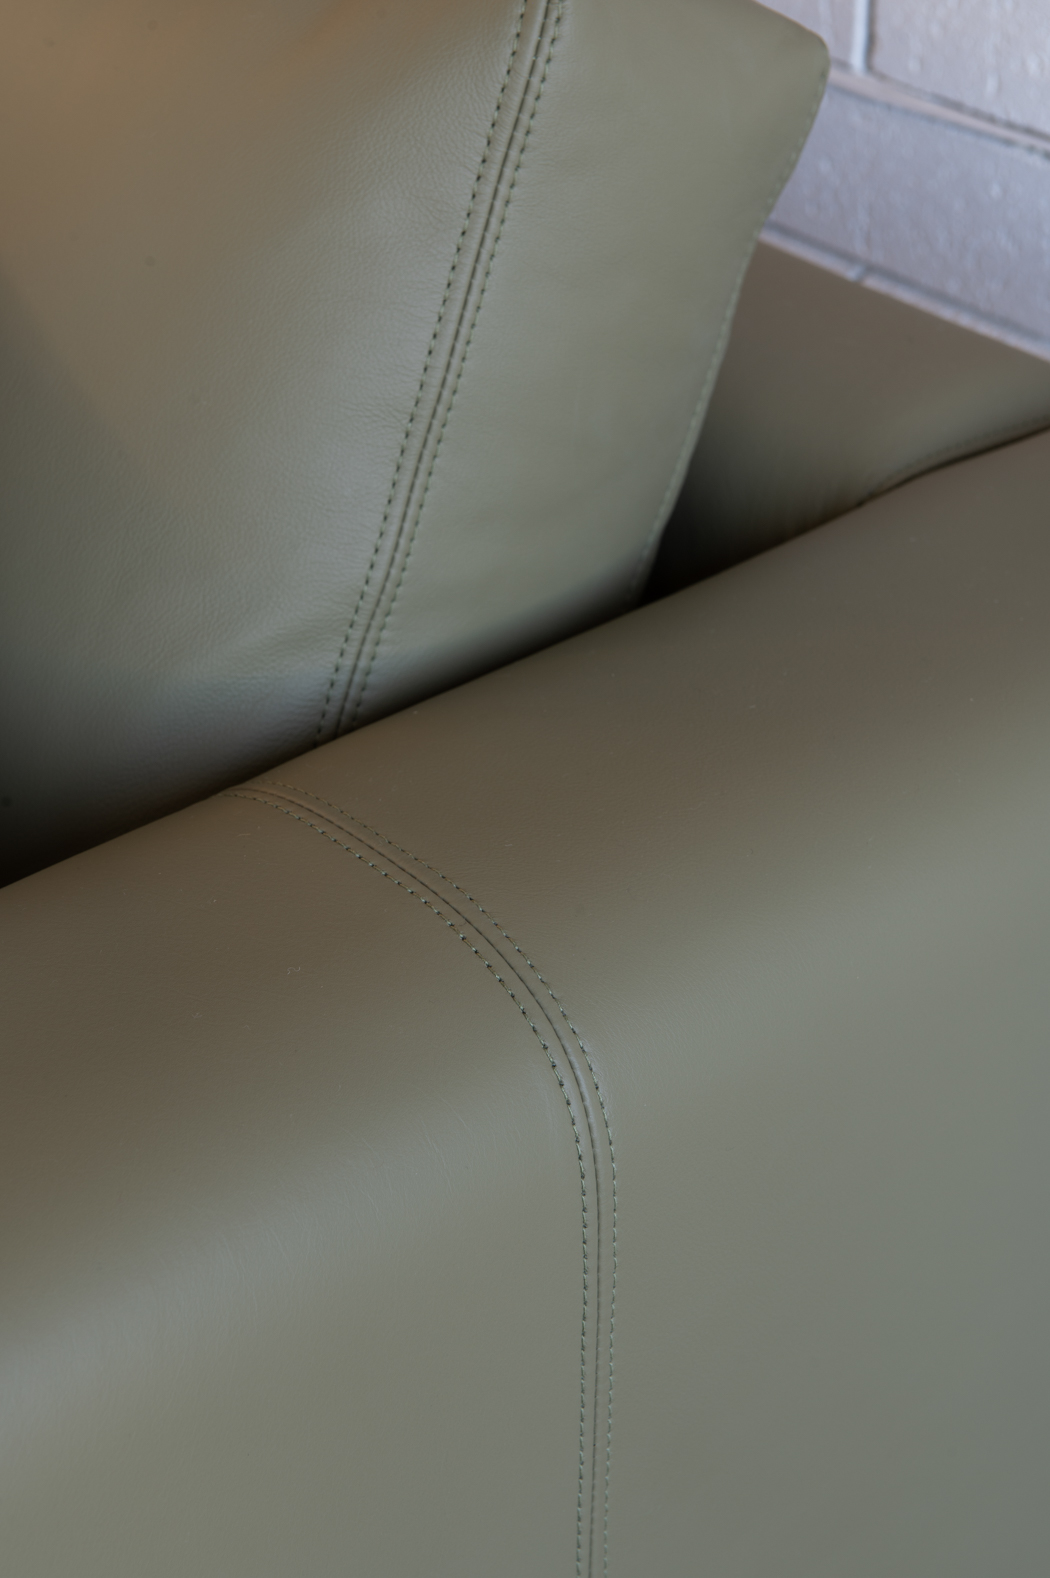 Melbourne Sofa Leather